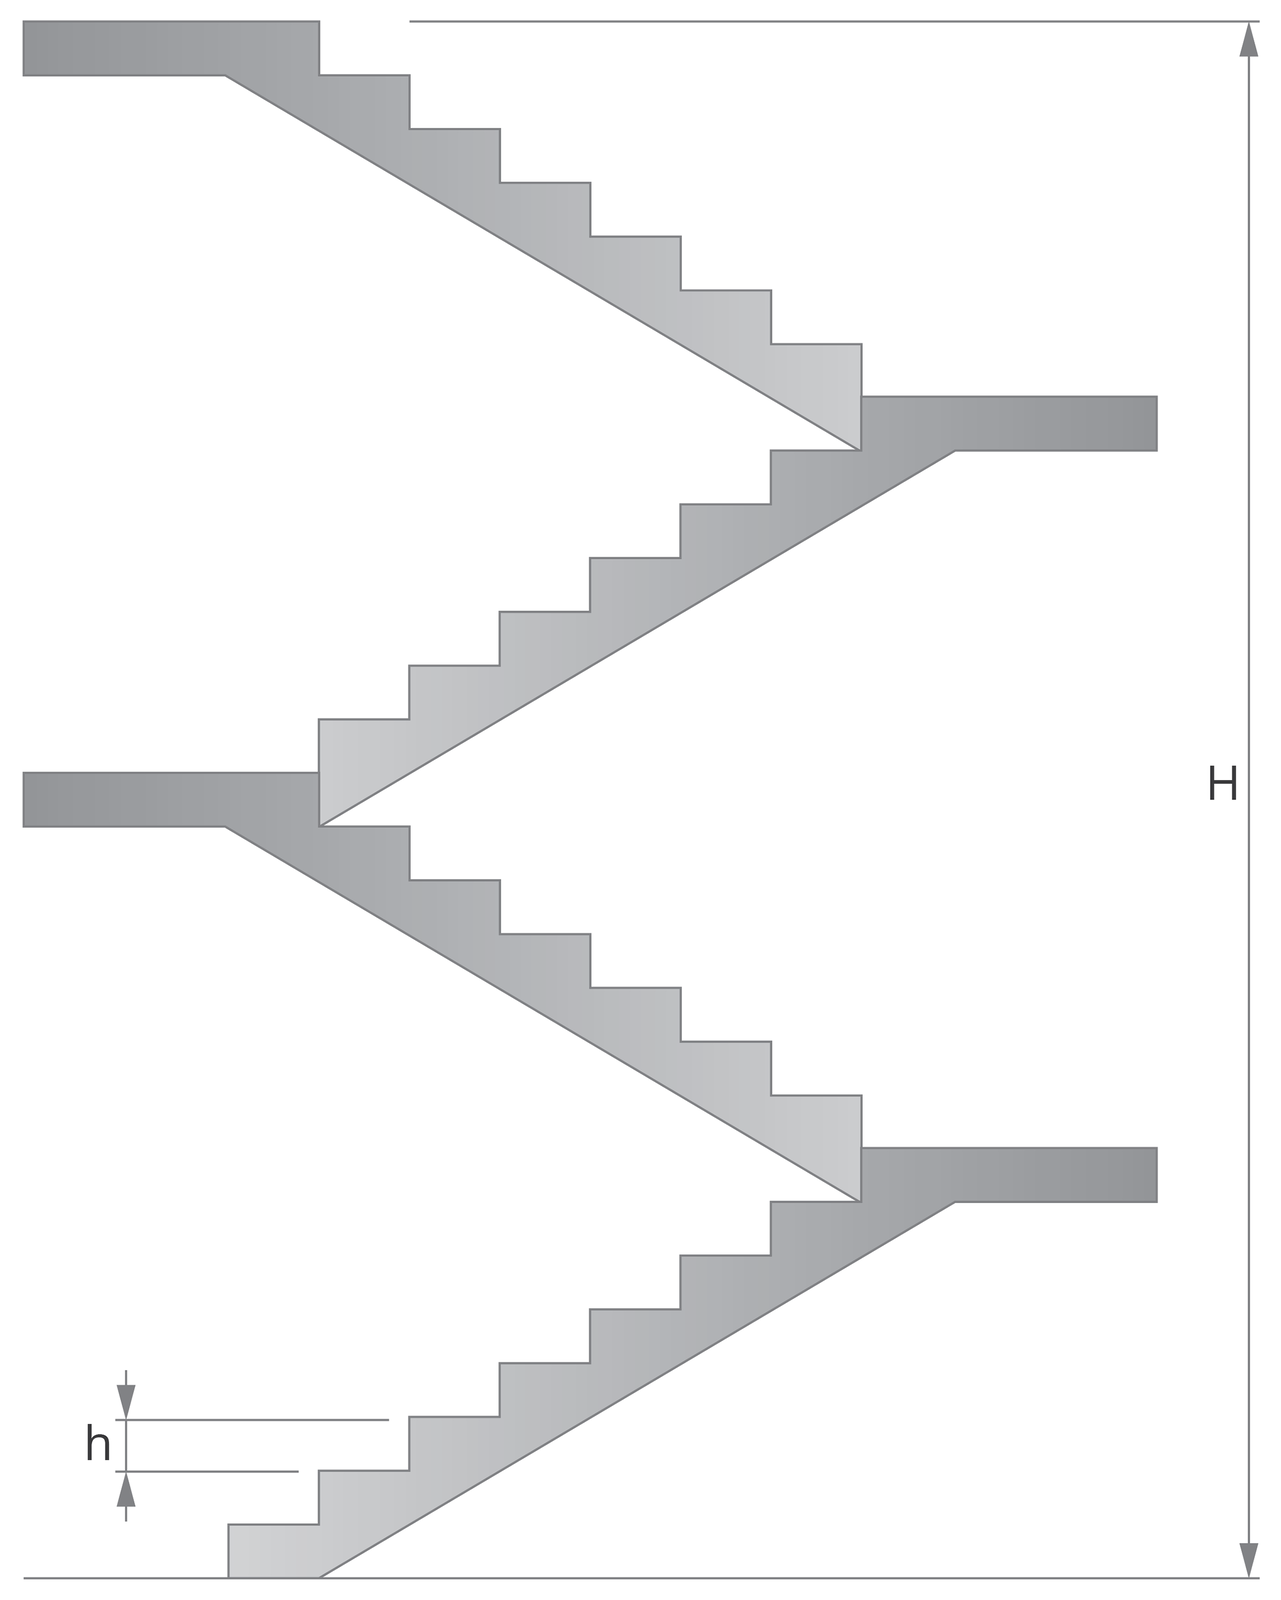 Zdjęcie przedstawia schematyczny  przekrój schodów ze zaznaczoną całkowitą wysokością schodów przez duże H oraz wysokością każdego schodka przez małe h 